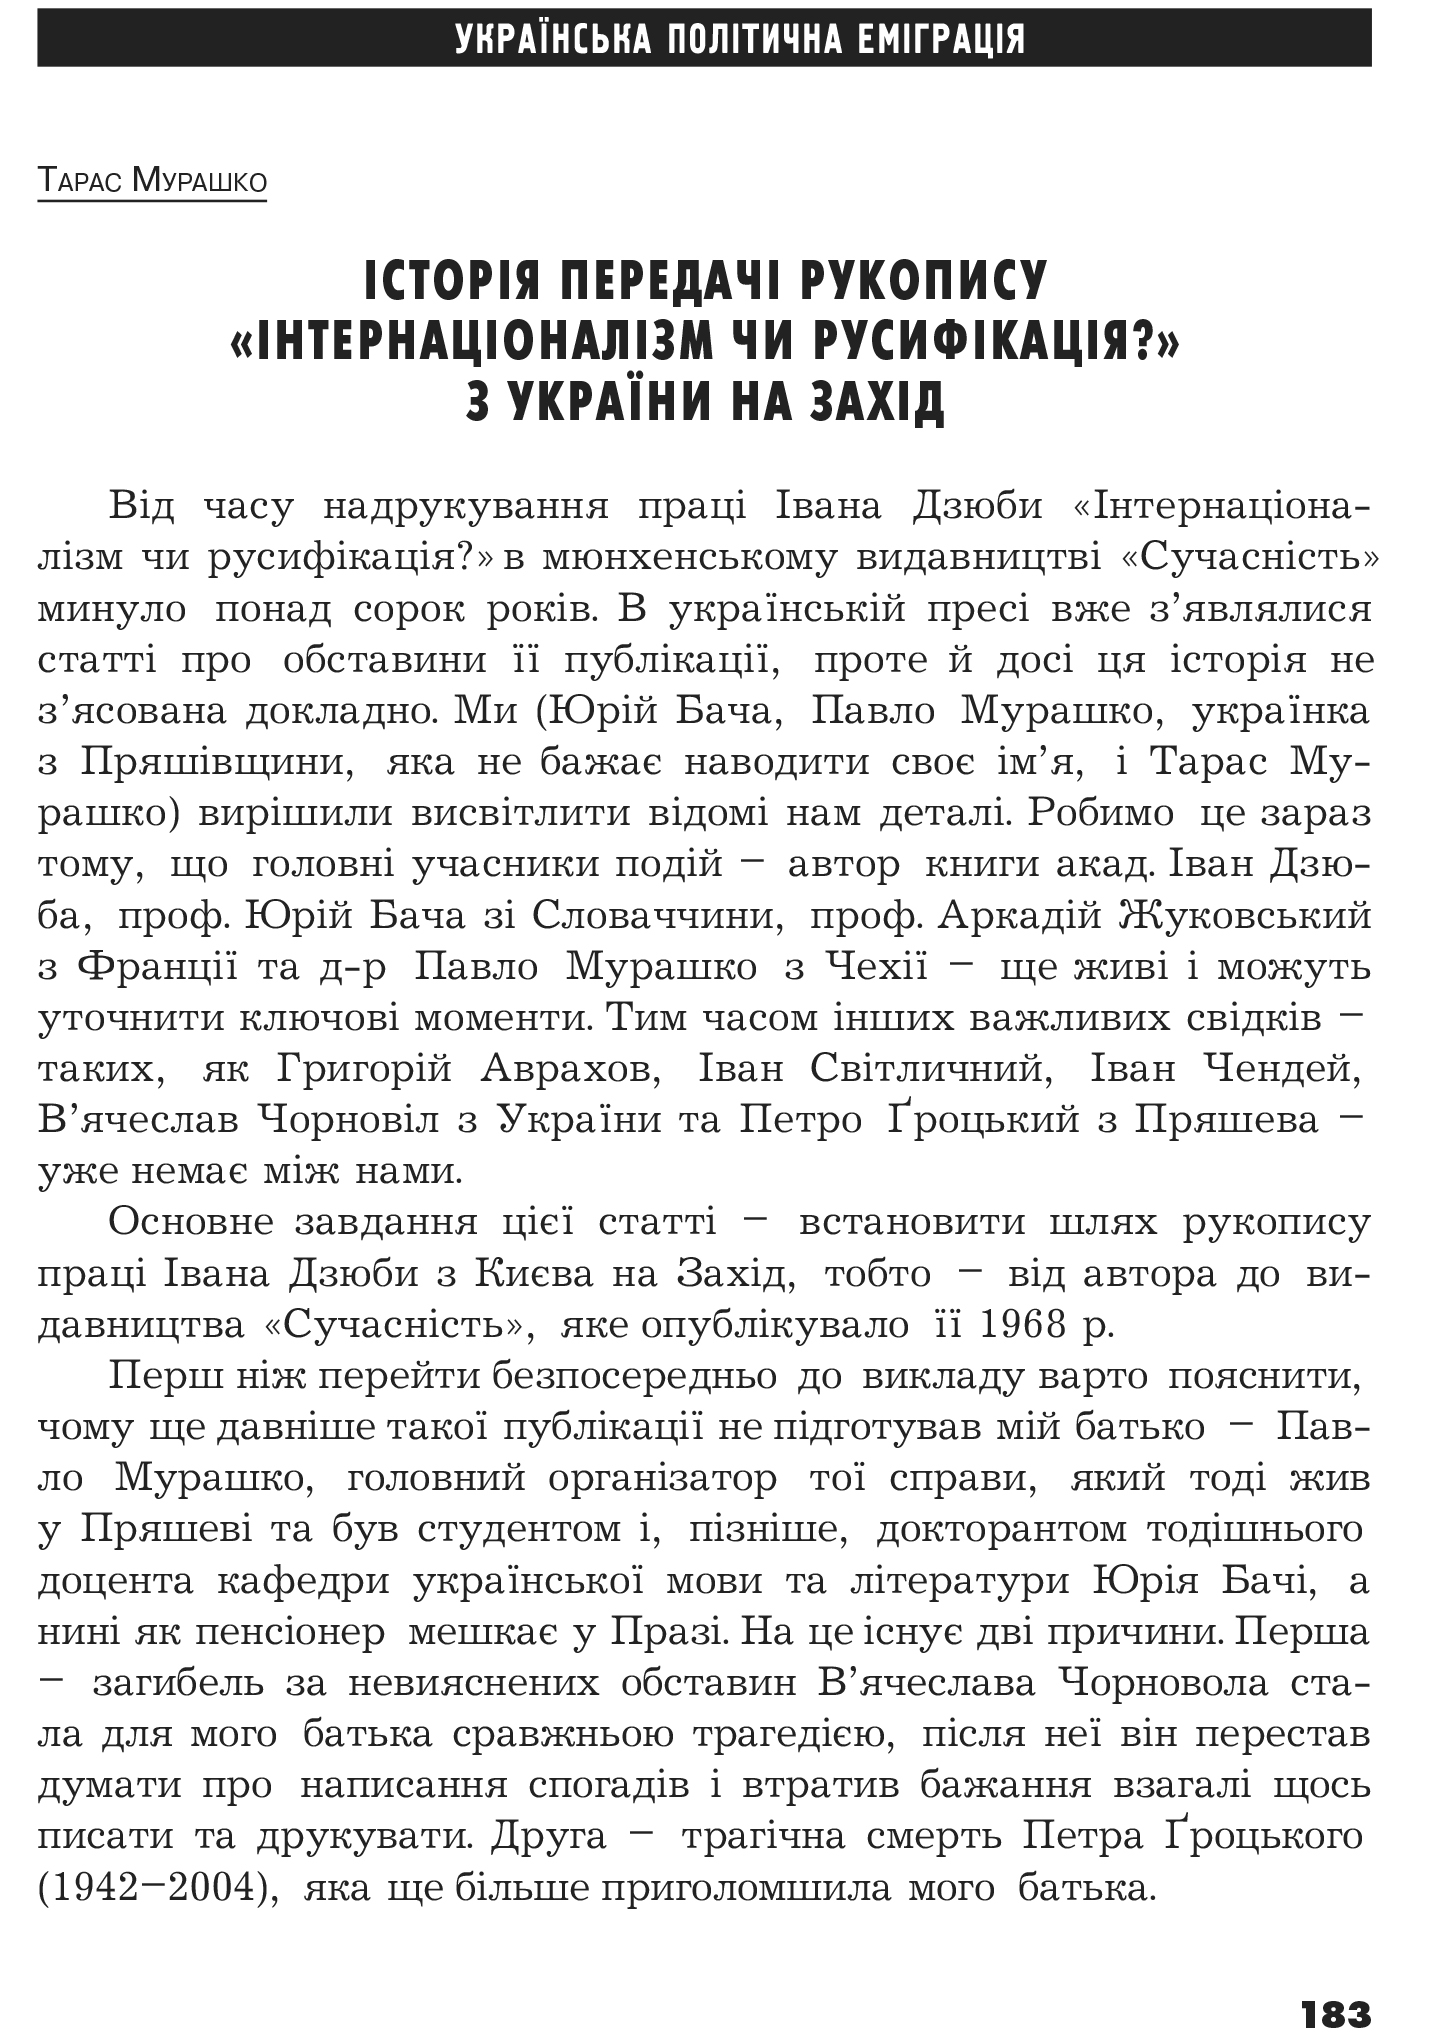 Український визвольний рух №14, ст. 183 - 193